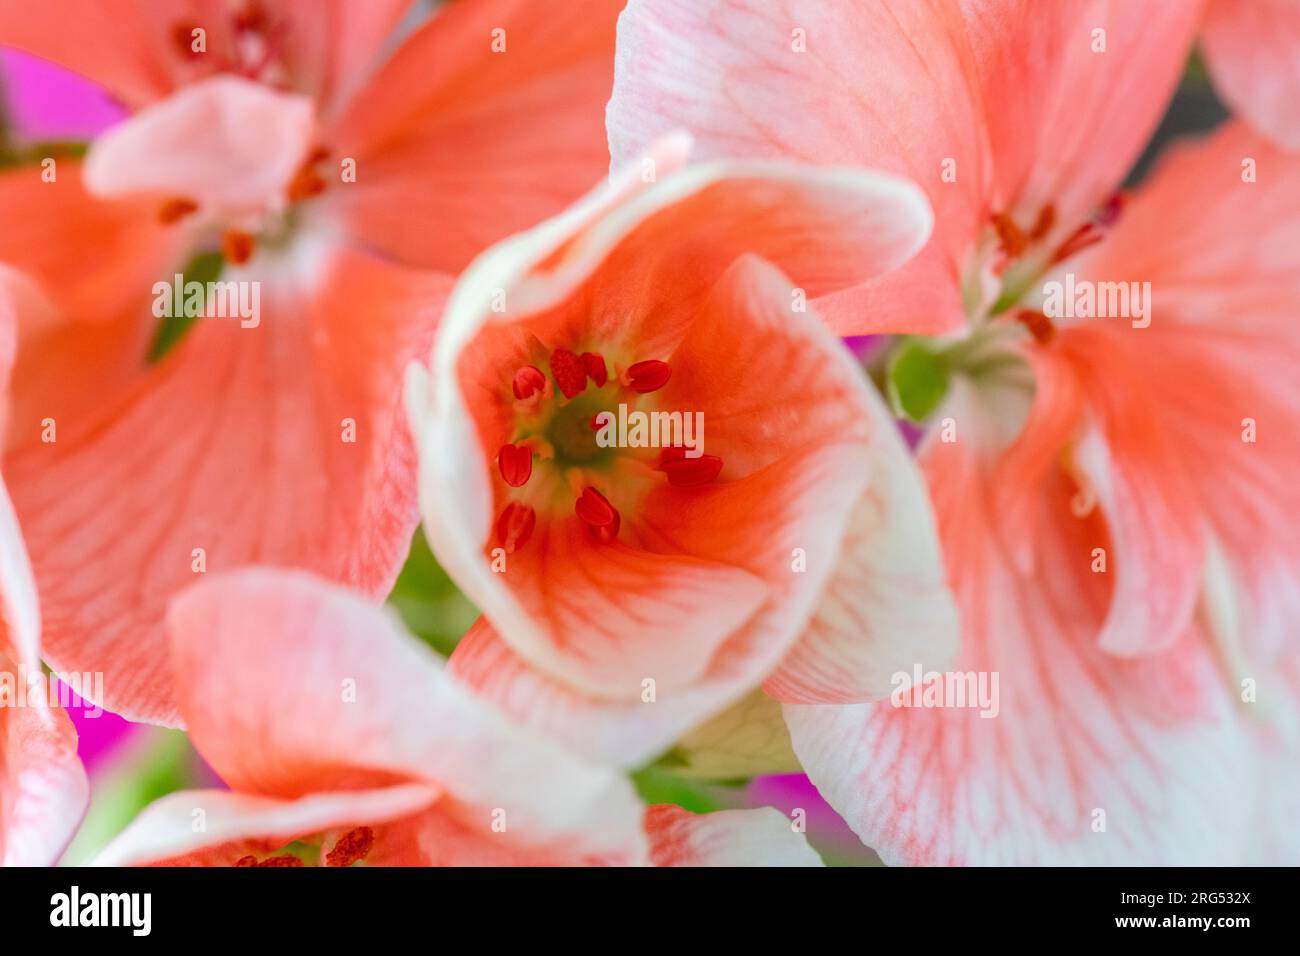 Geranium, Pelargonium, Geranium, genus, macro shot showing bloom, abstract Stock Photo